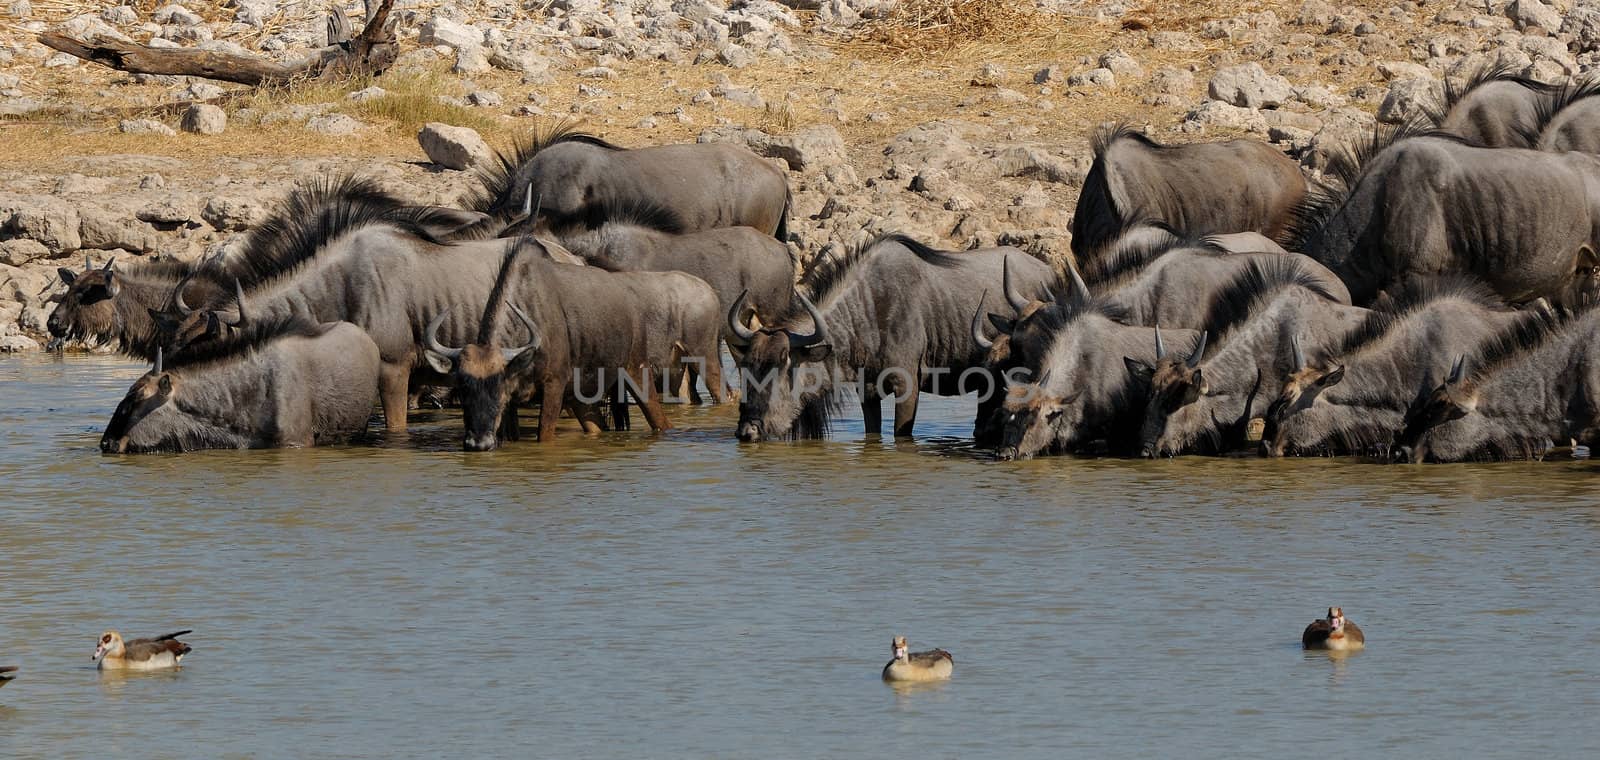 Blue Wildebeest drinking water, Okaukeujo waterhole by dpreezg